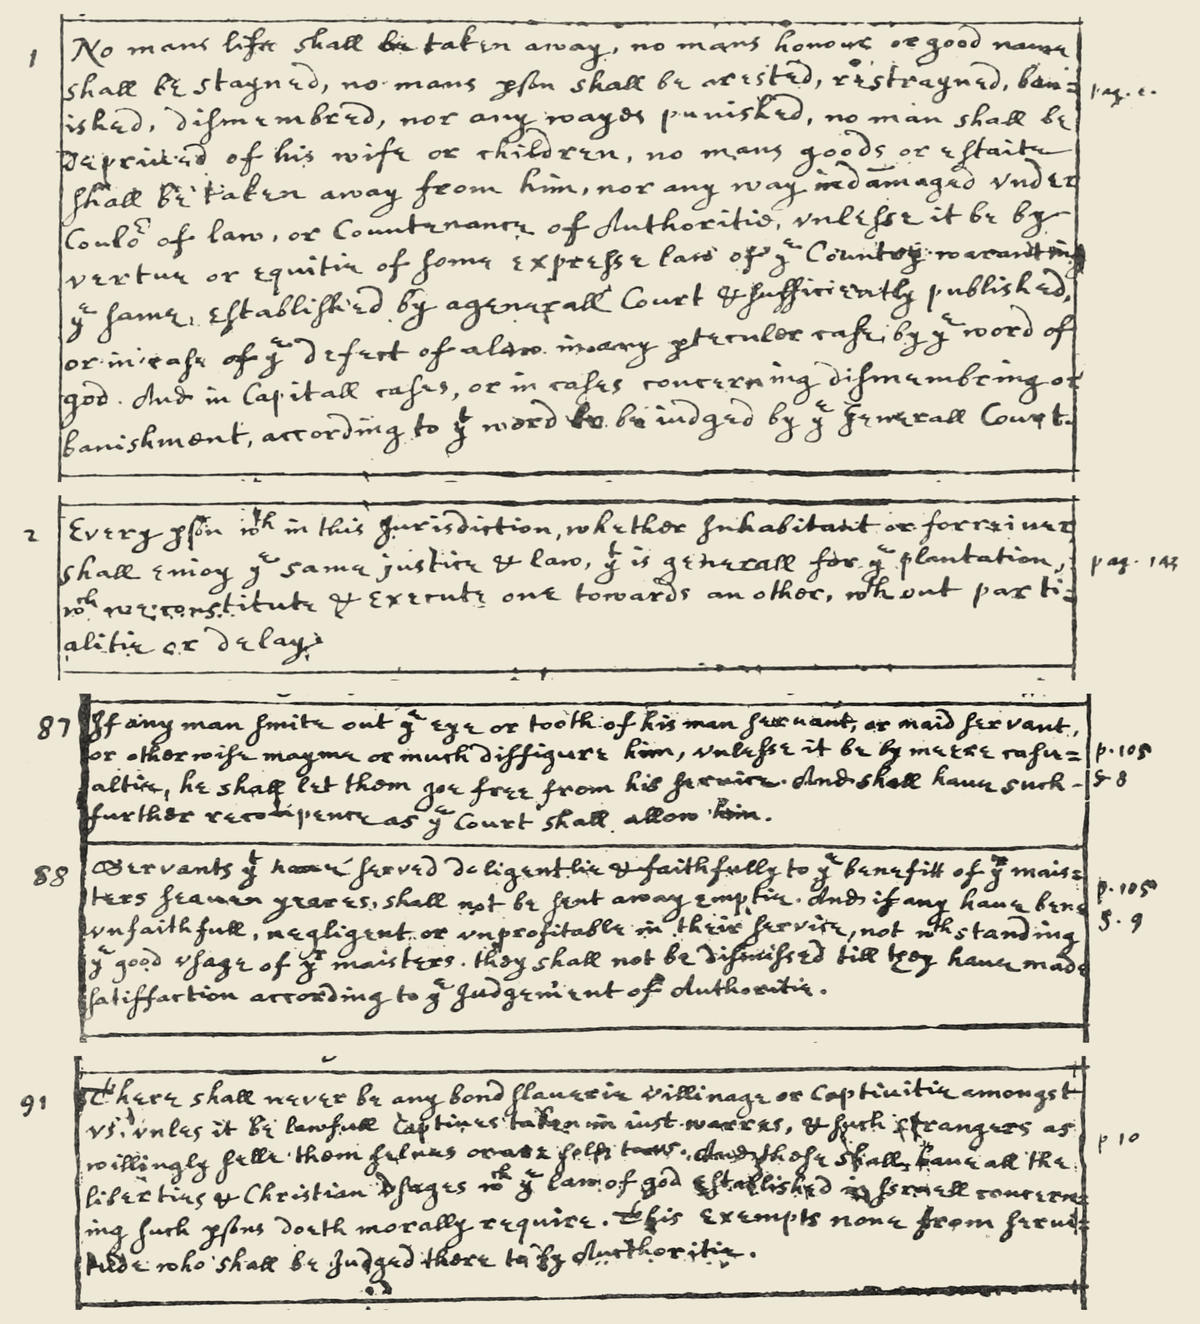 A handwritten copy of the 1641 Massachusetts Body of Liberties